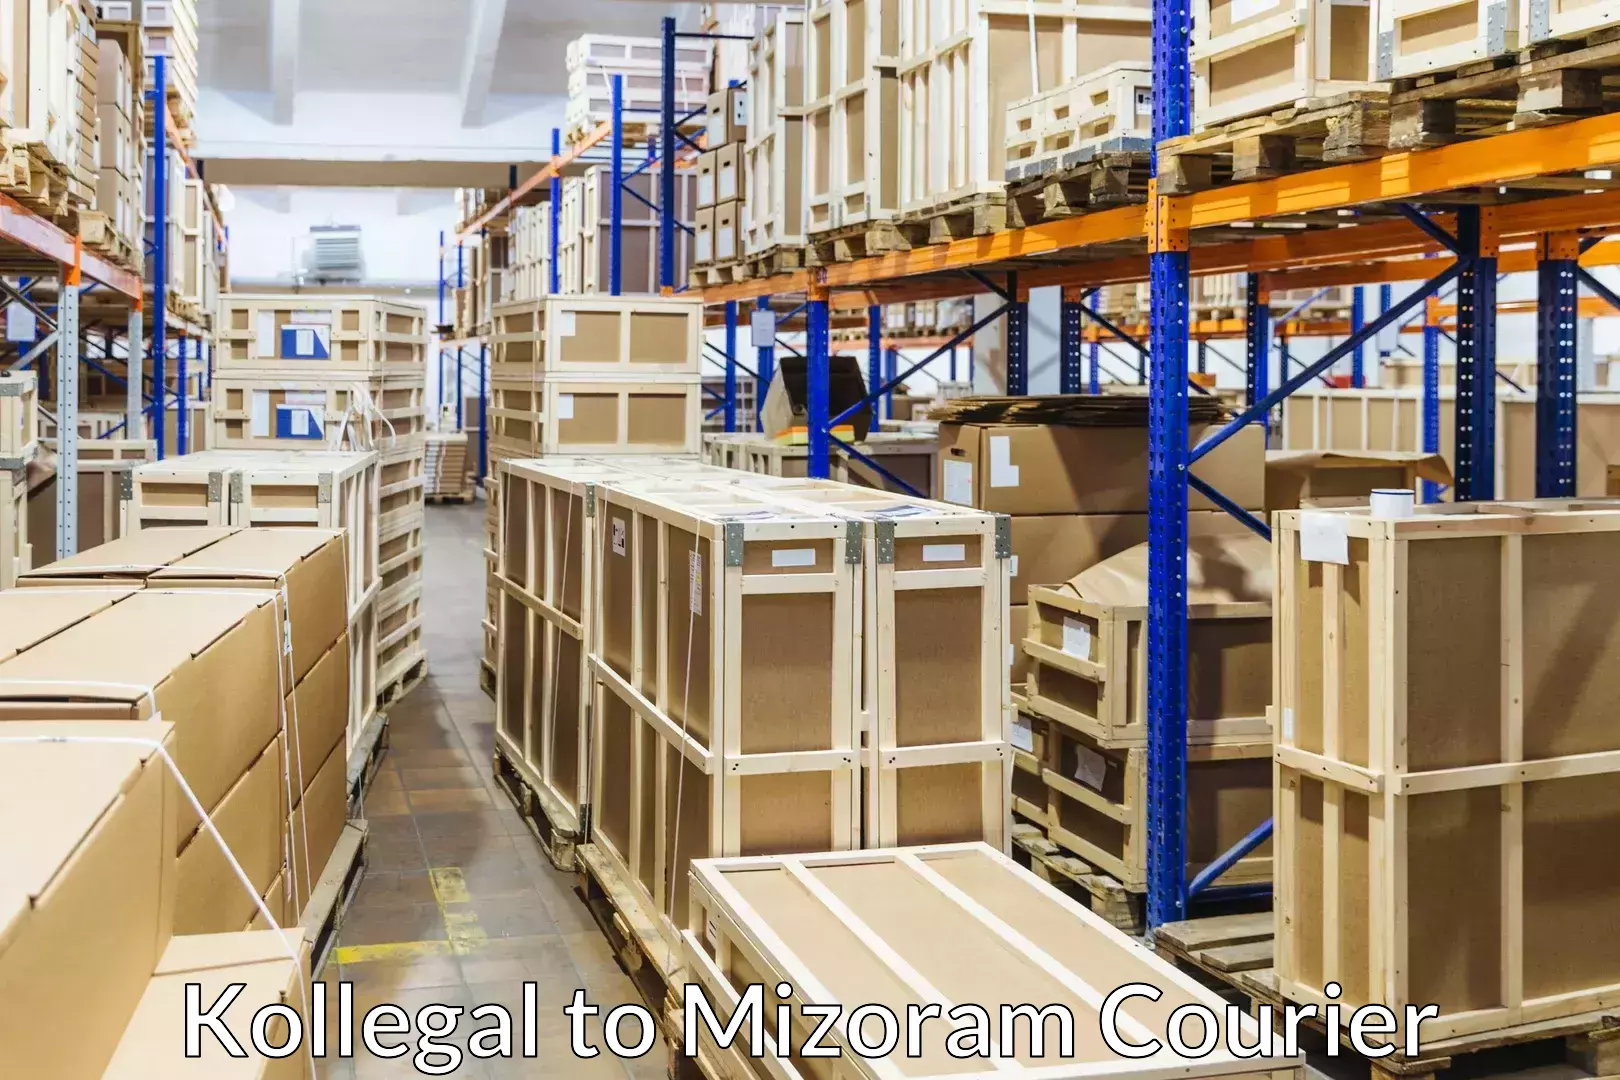 Furniture moving experts Kollegal to Mizoram